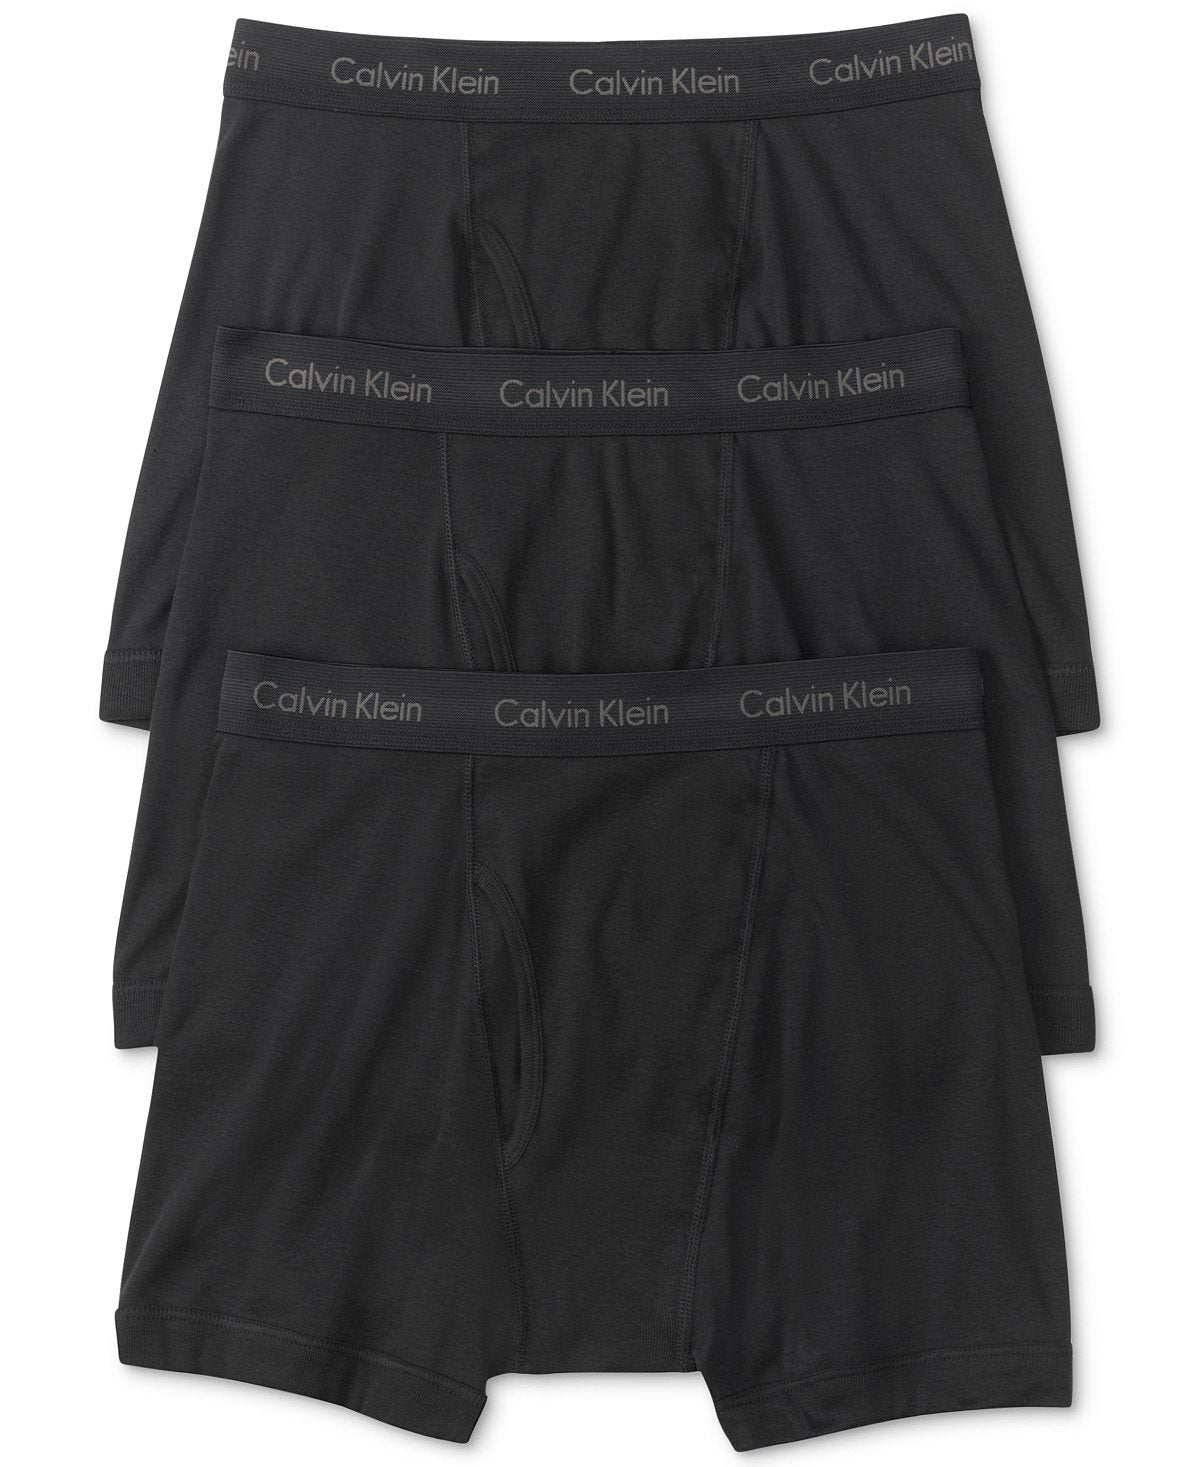 Classic 100% cotton briefs 3-pack, Calvin Klein, Shop Men's Underwear  Multi-Packs Online